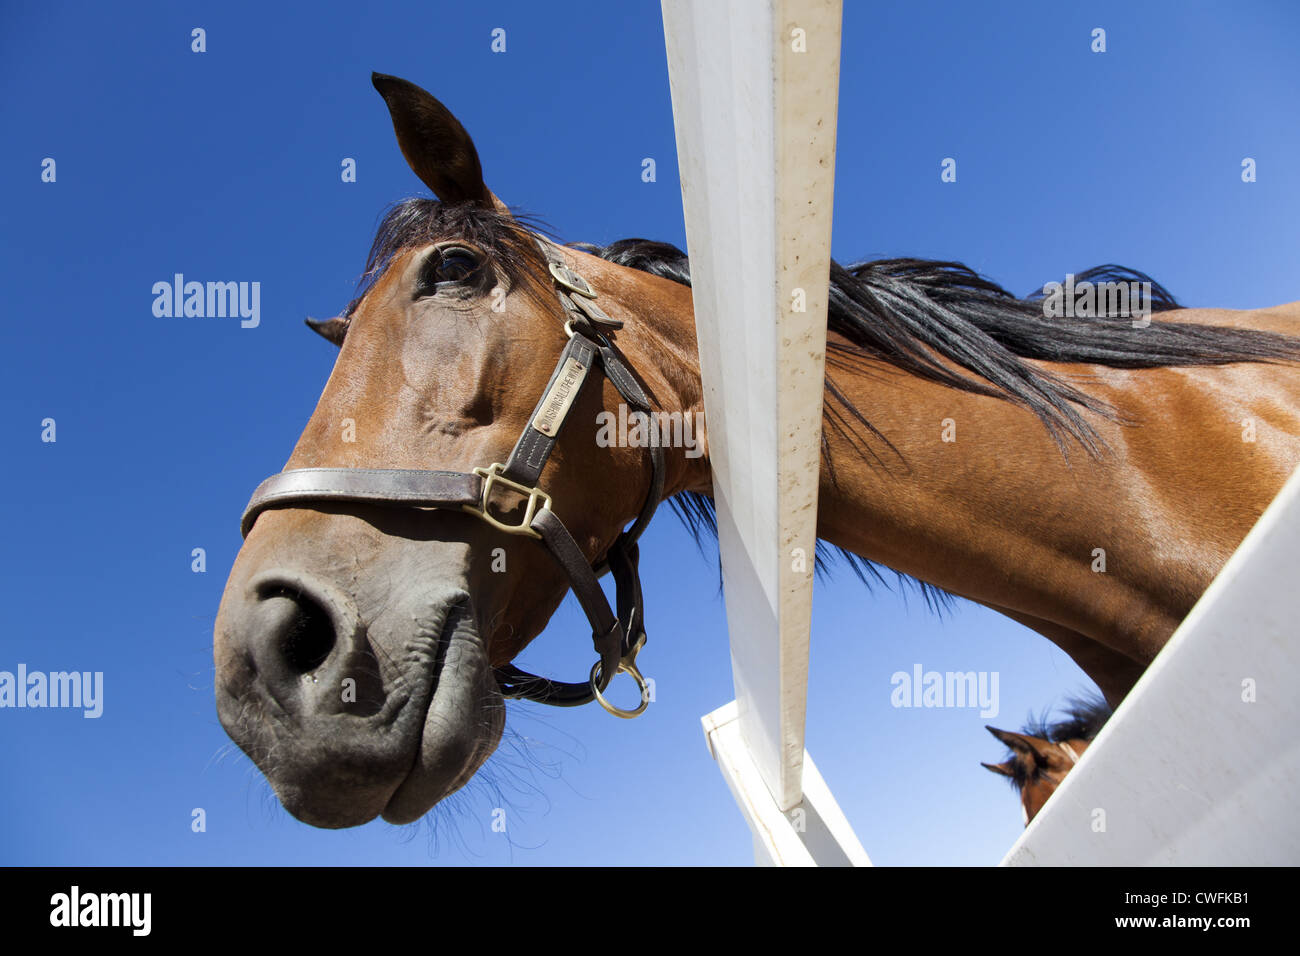 Bucht Pferd trägt einen Kopf Colllar Blick über weißen Zaun, geschossen von unten Stockfoto